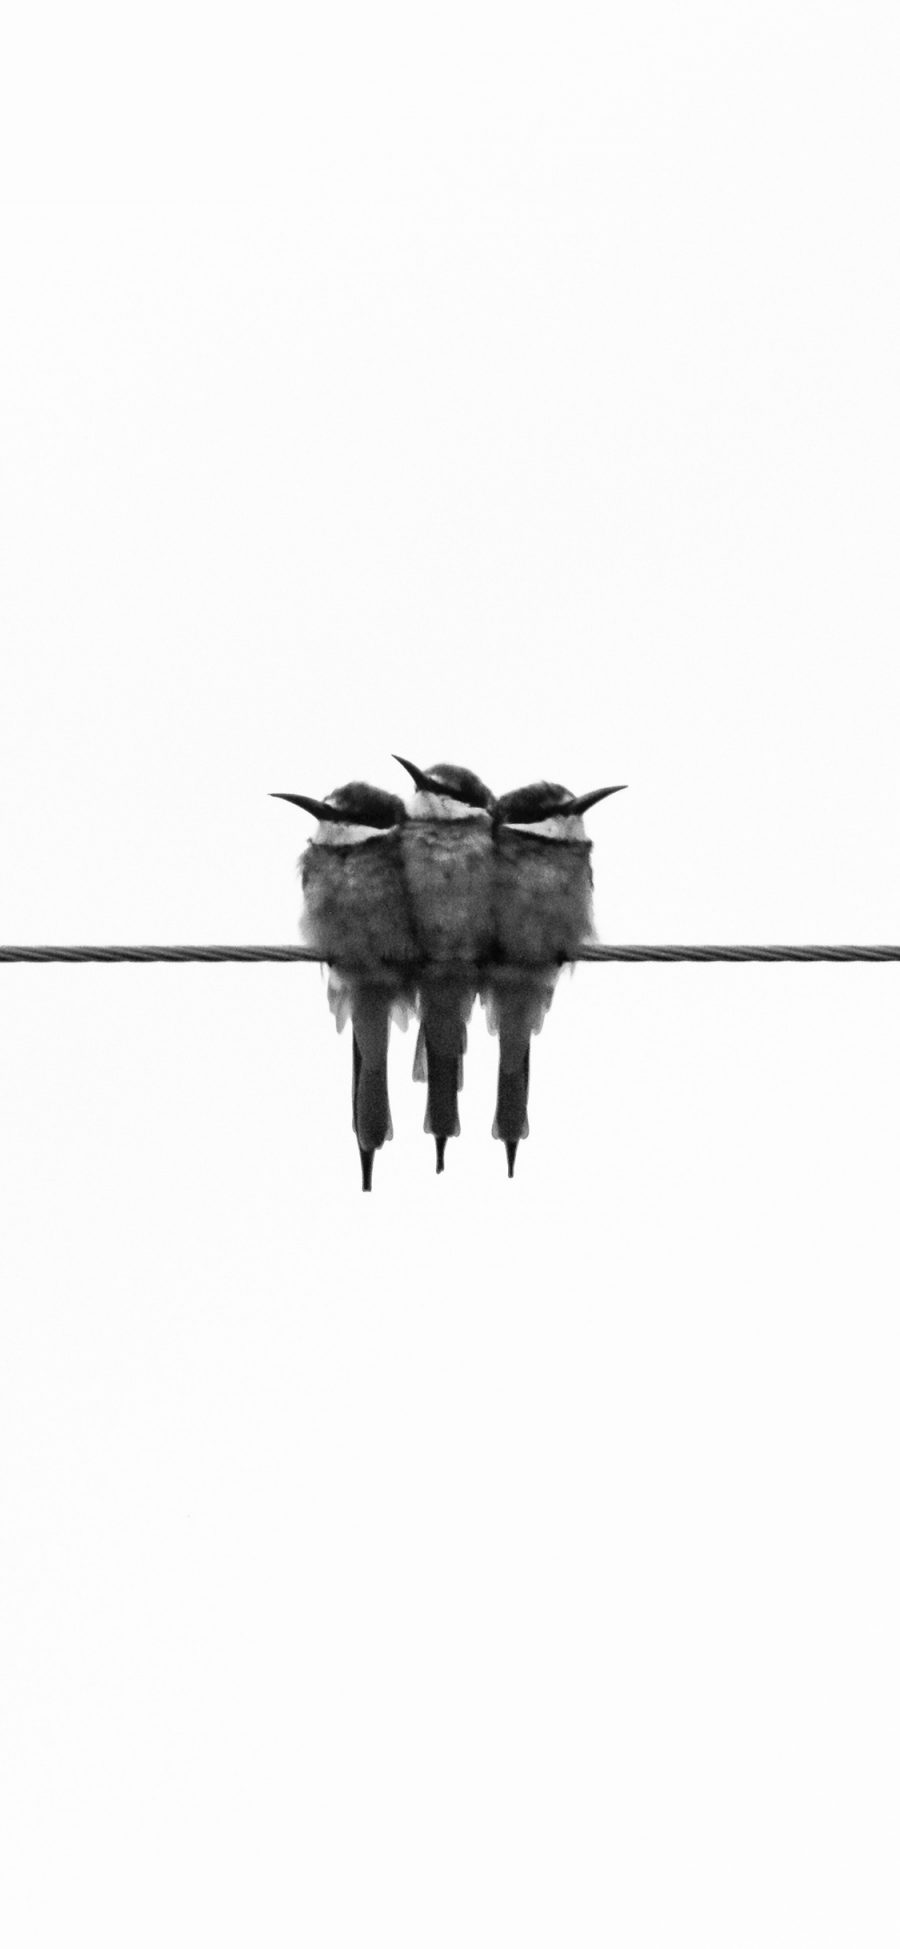 [2436×1125]线条 鸟科 麻雀 栖息 黑白 苹果手机壁纸图片